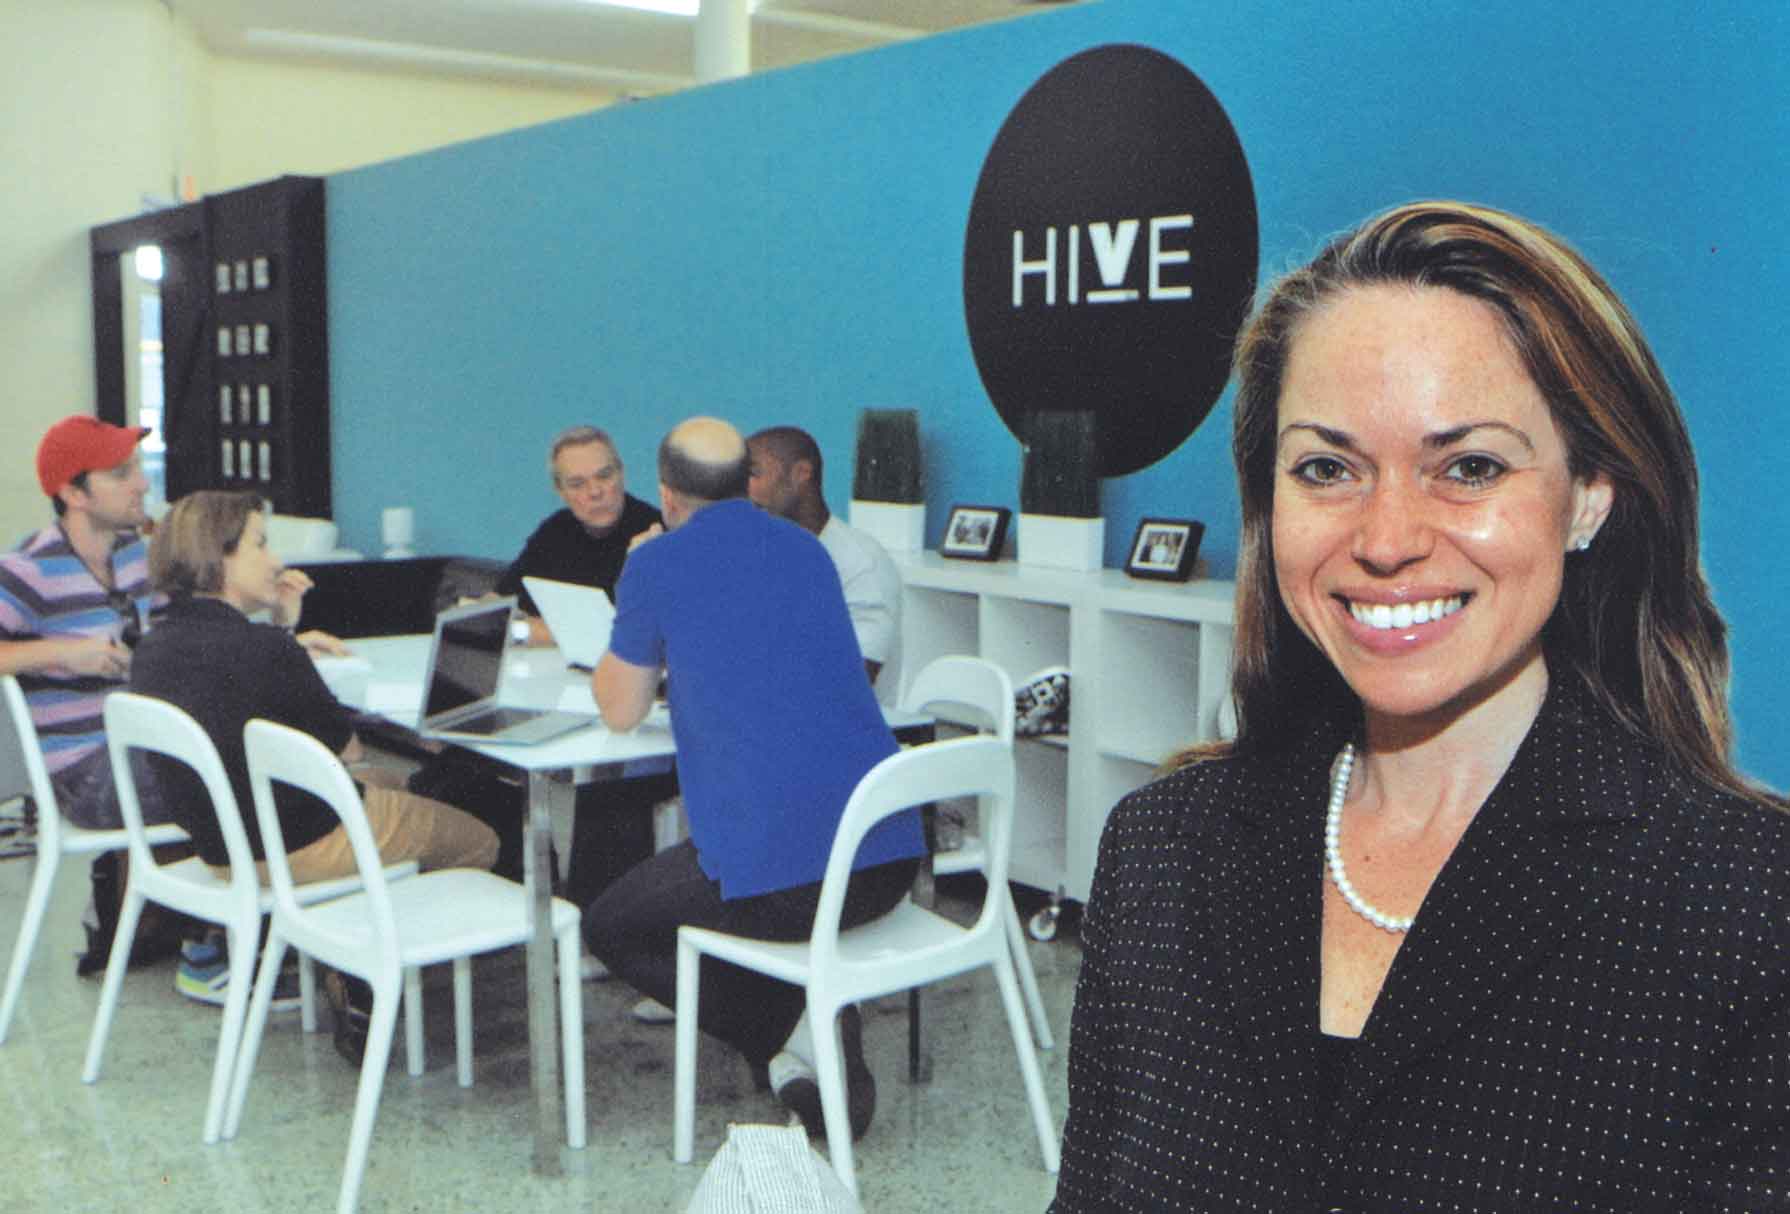 Tech haven Venture Hive puts focus on education